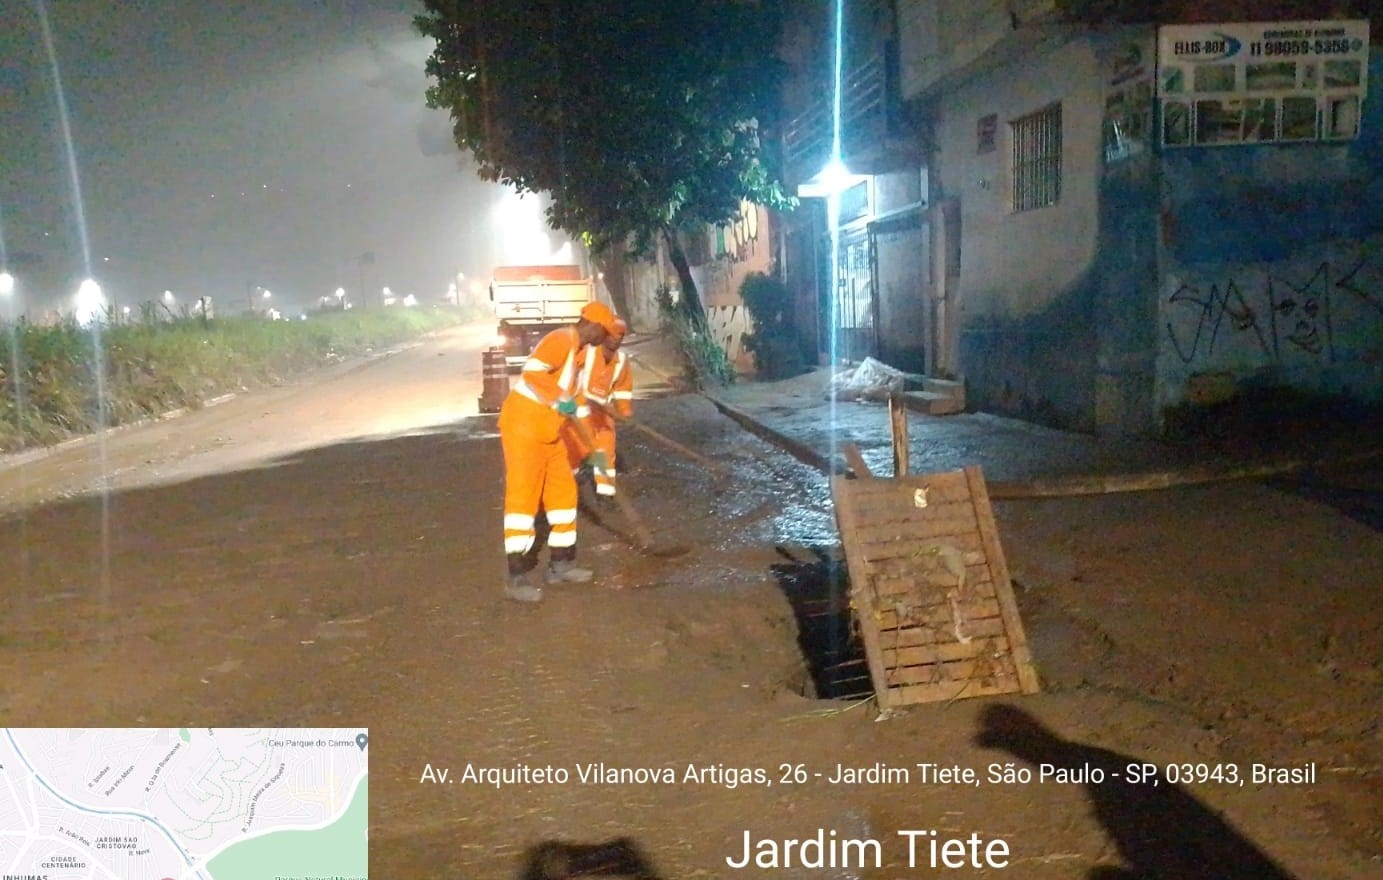 Trabalhadores com uniforme laranja limpam rua com barro, em frente a residências. Foto identificada como Av. Vilanova Artigas, Jardim Tietê.